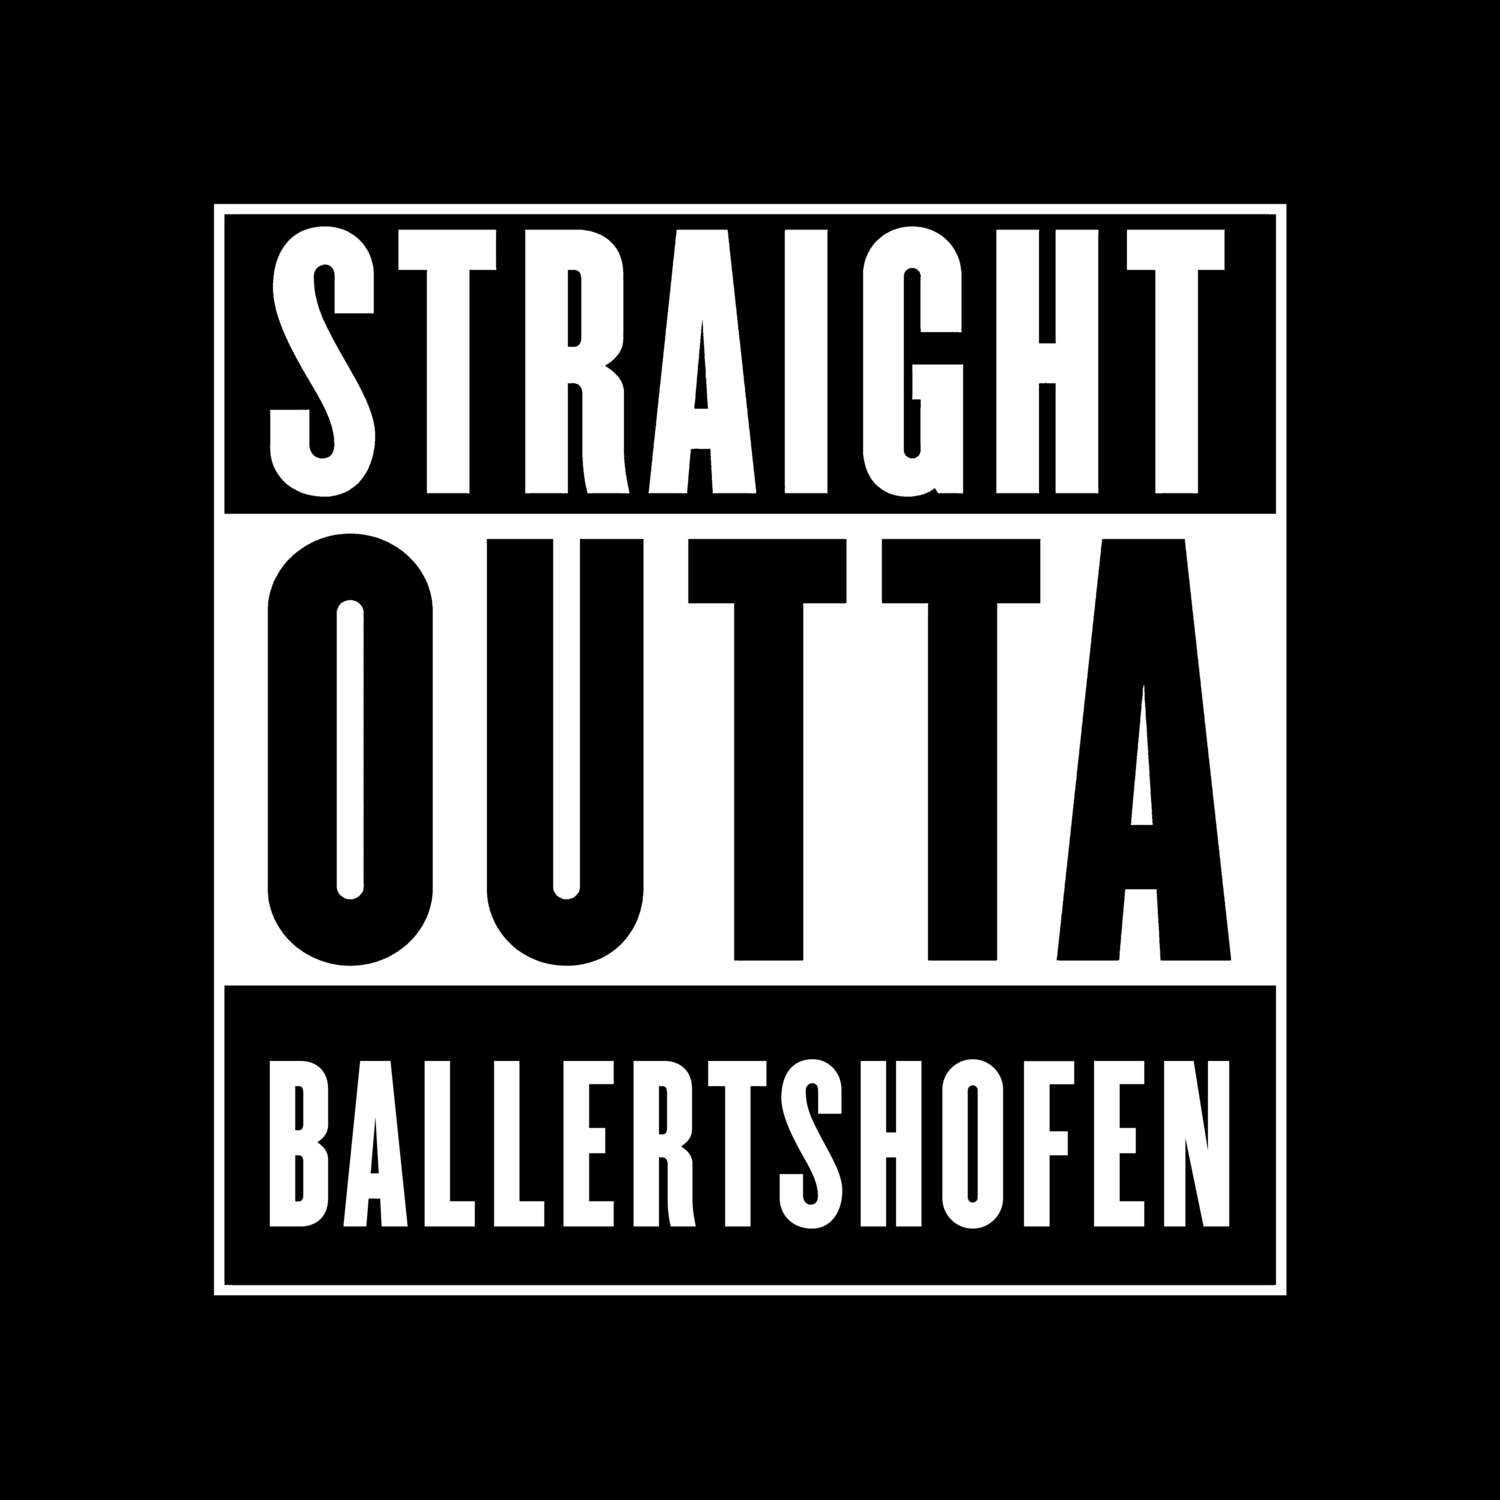 Ballertshofen T-Shirt »Straight Outta«